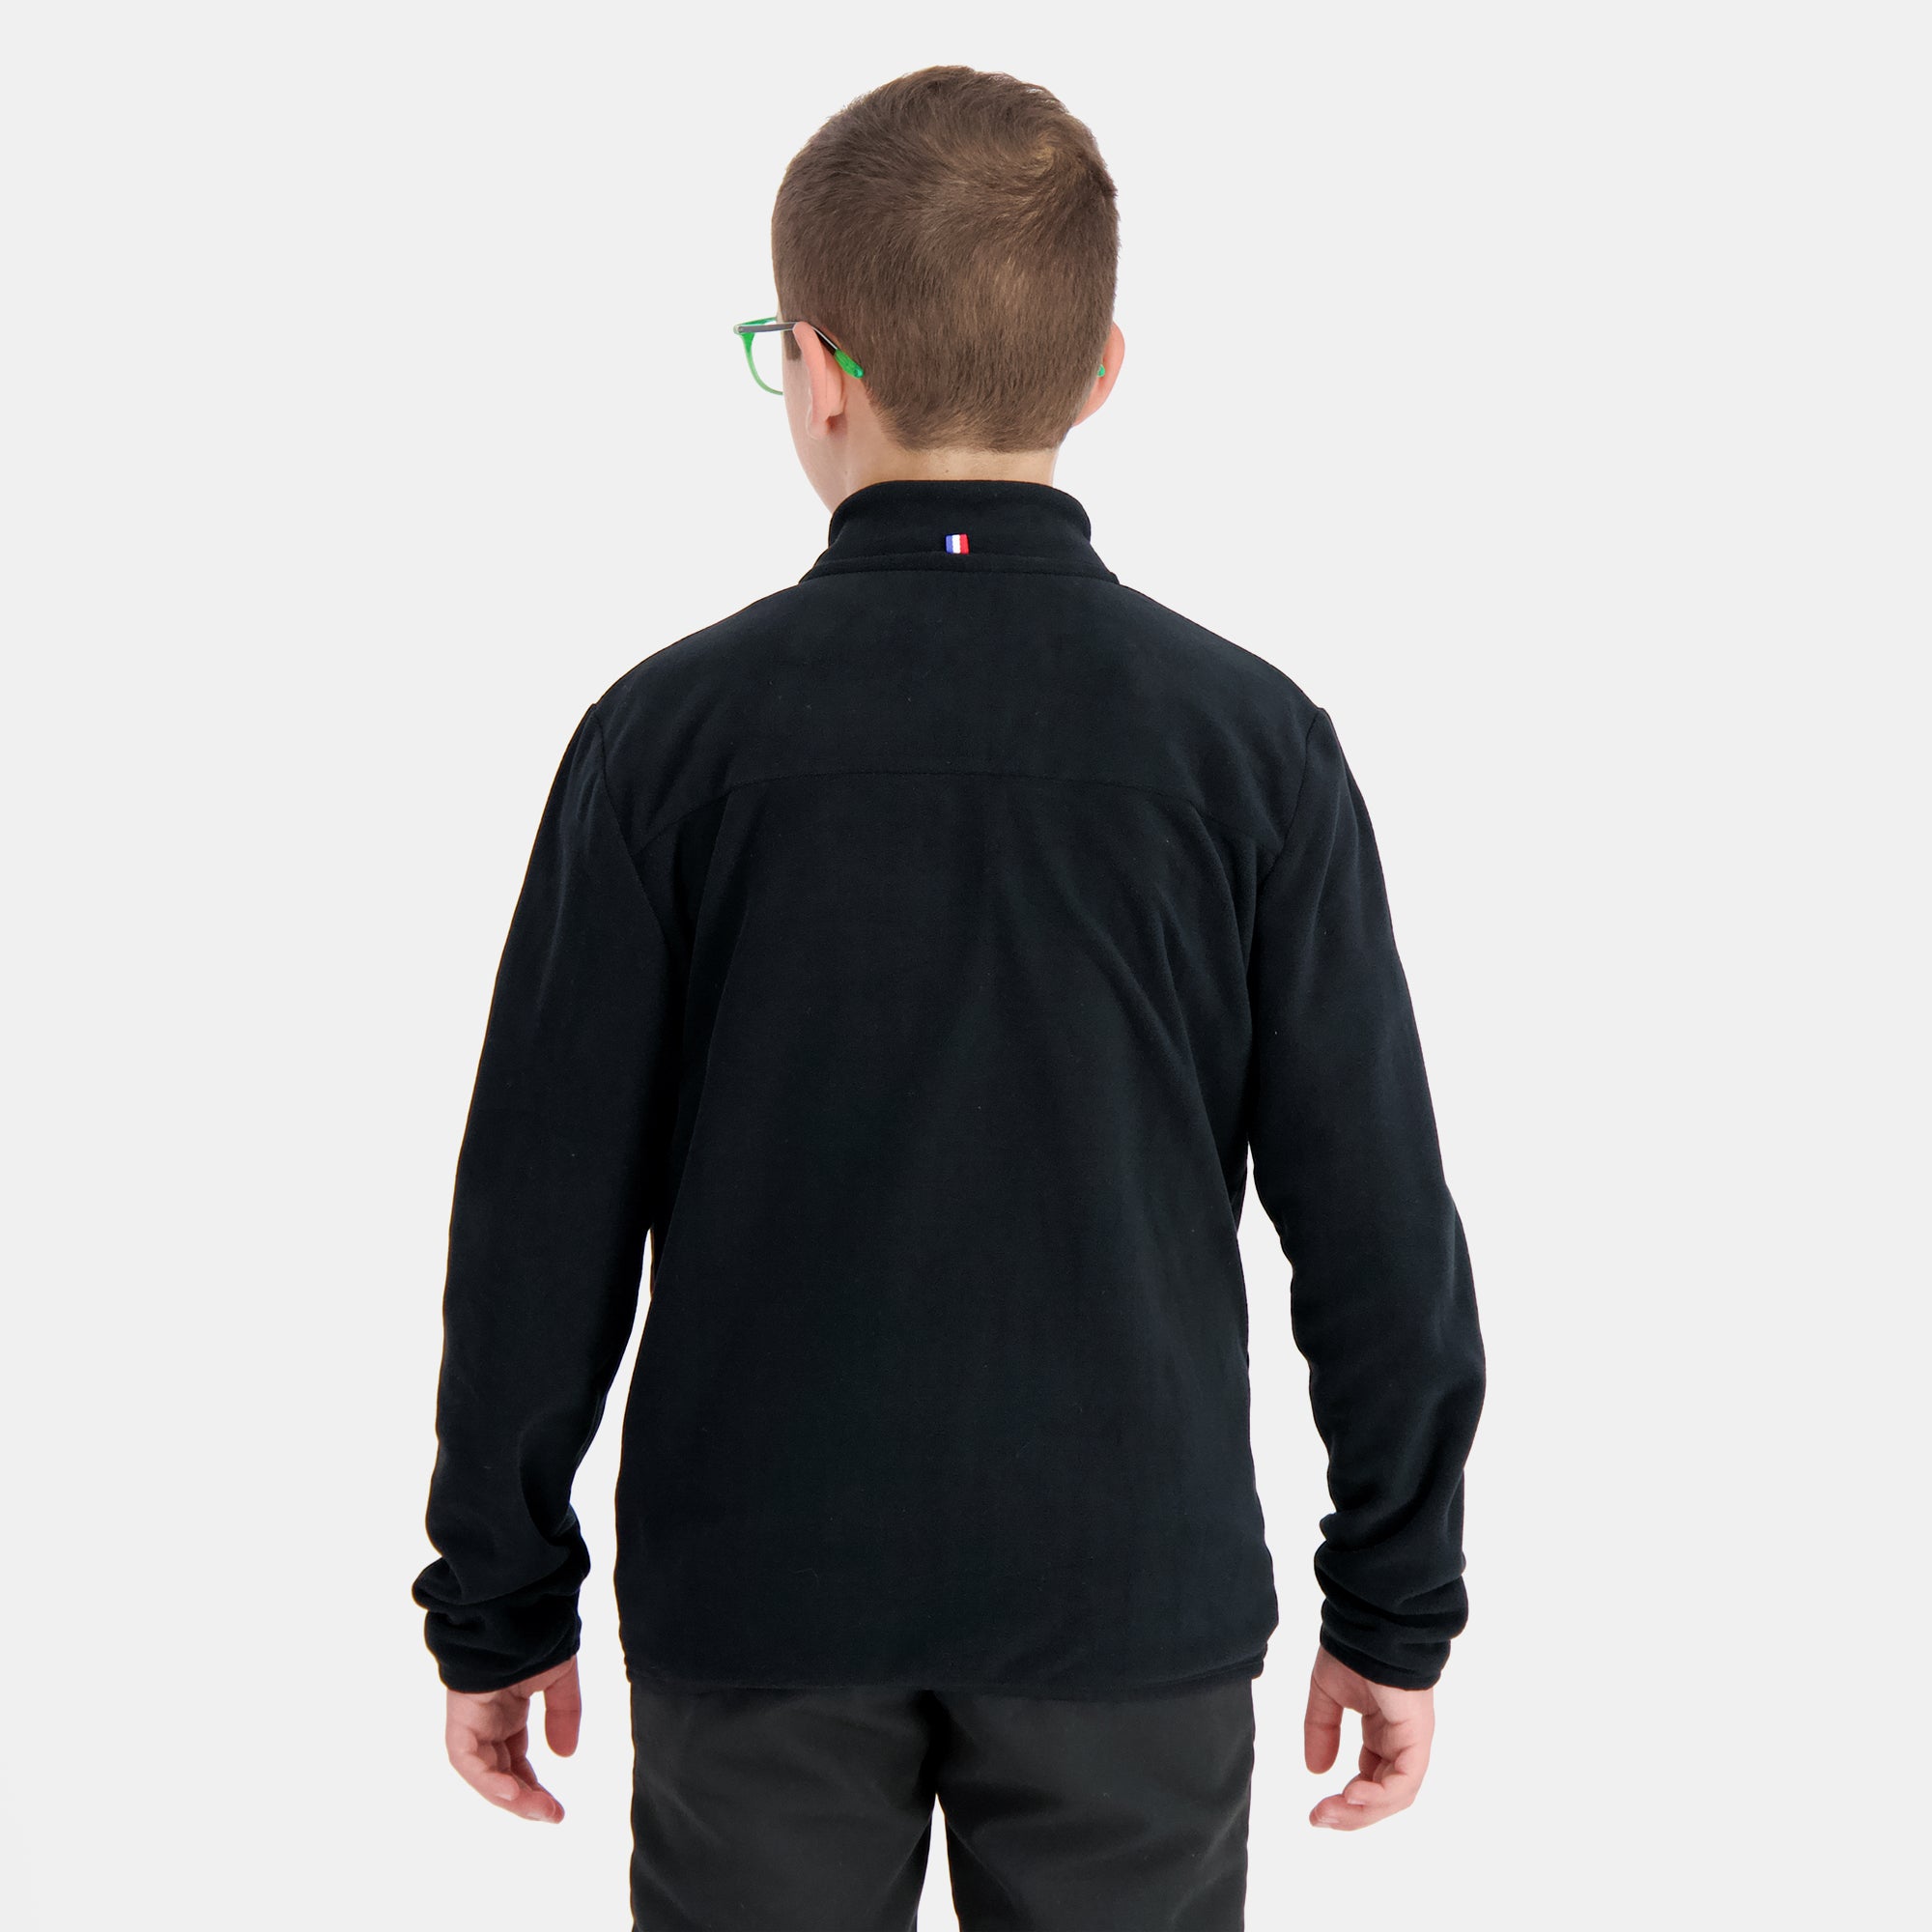 2410690-SAISON 1 FZ Sweat N°1 Enfant black/scara  | Sweatshirt für Kinder